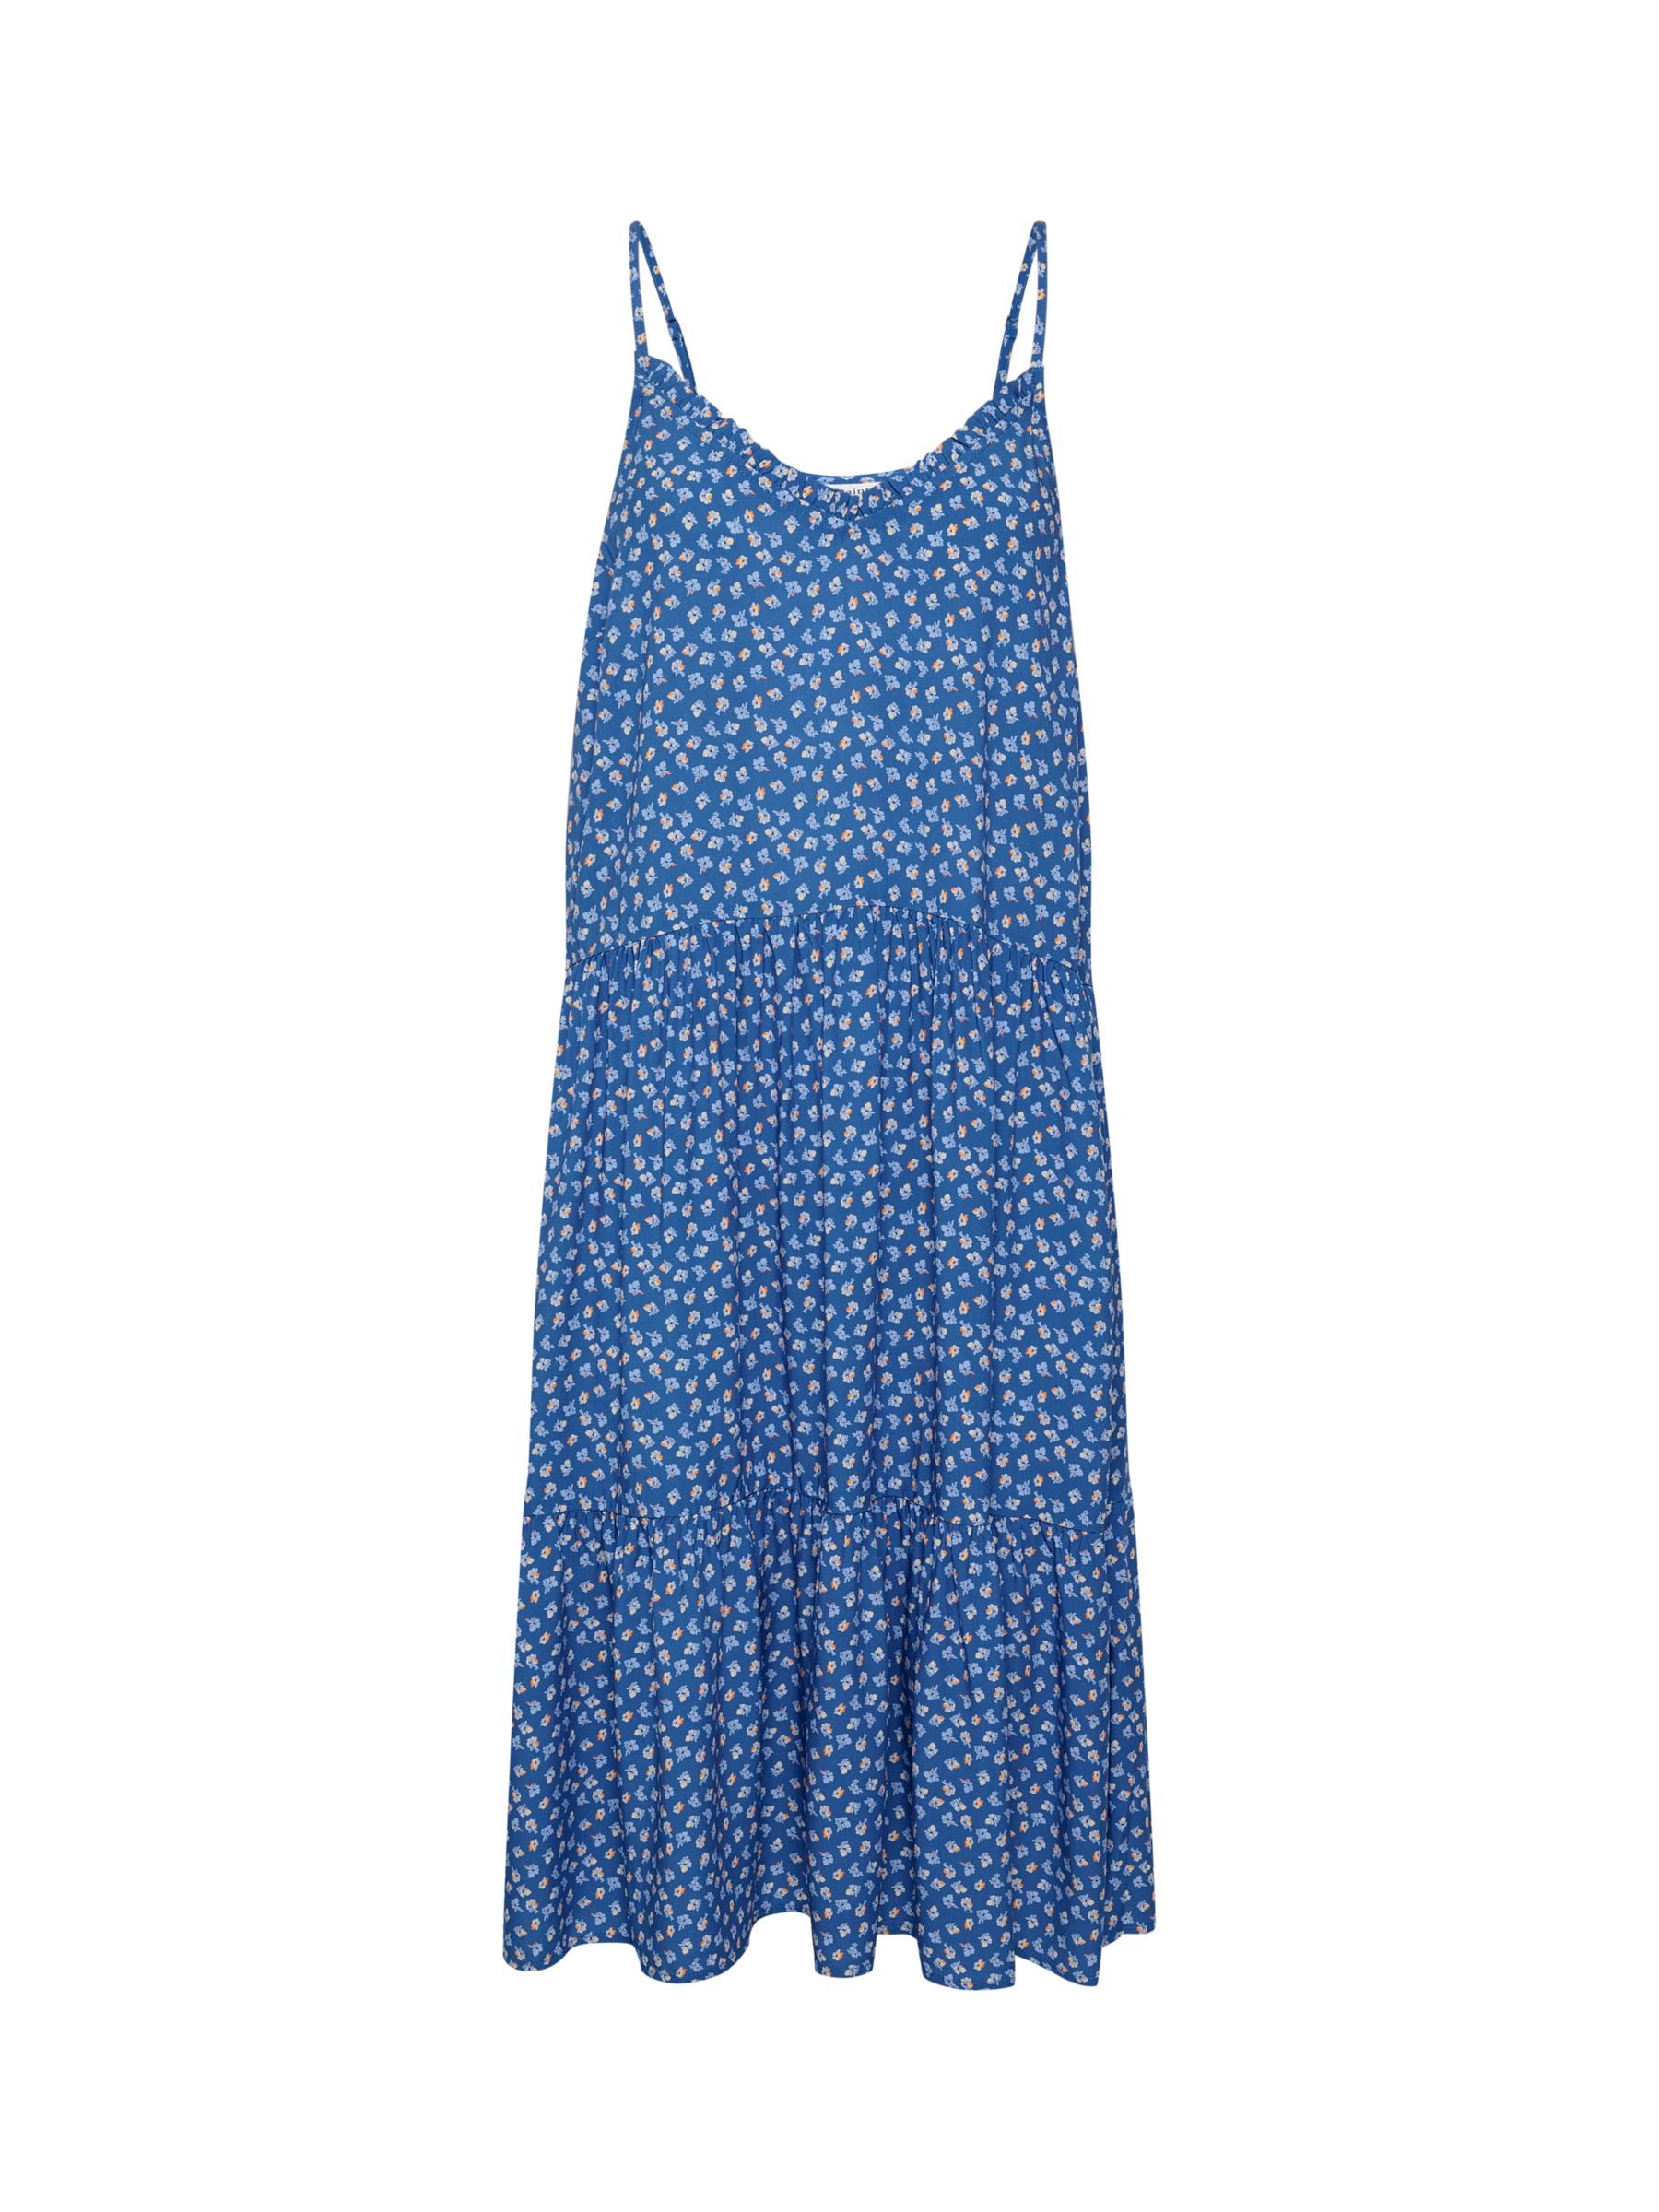 Saint Tropez Eda Strappy Dress, Blue Ditsy Floral, XXL